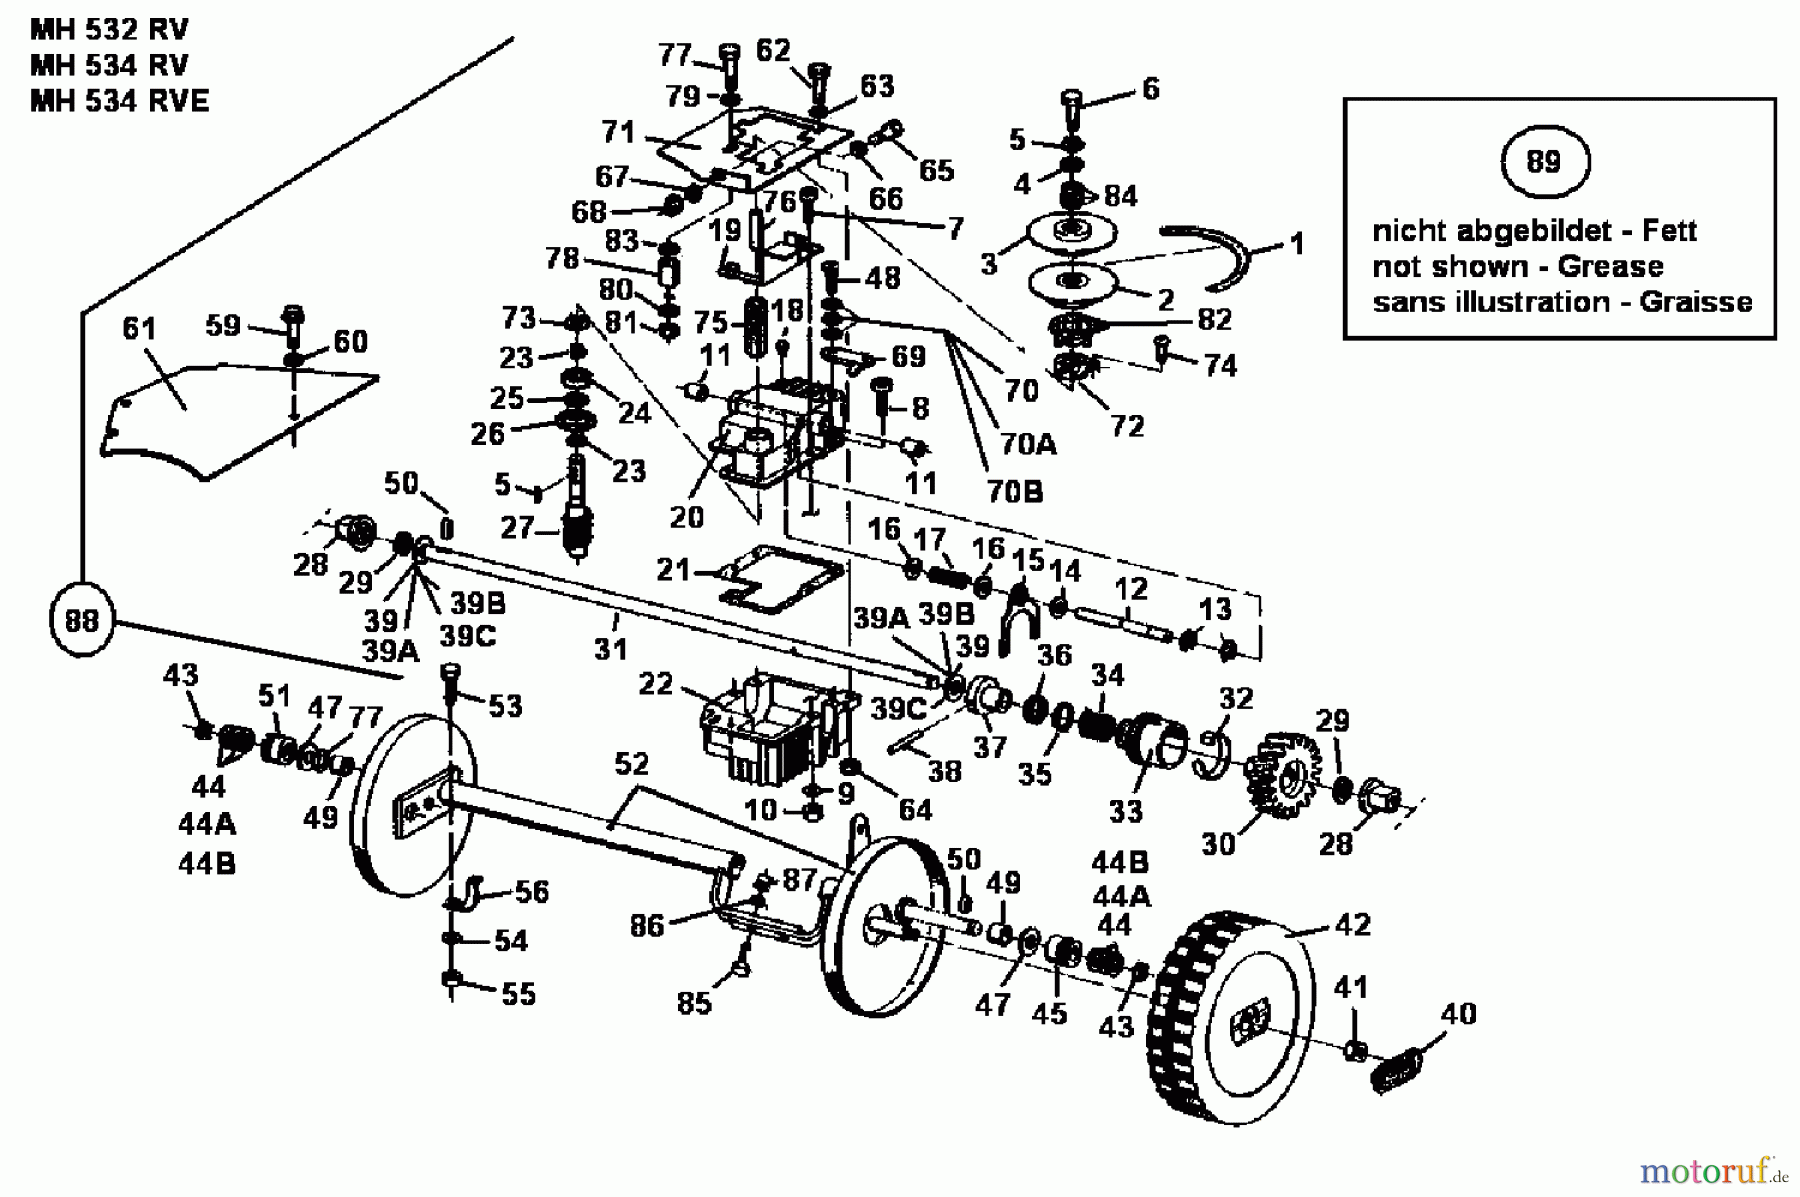  Gutbrod Motormäher mit Antrieb MH 534 RVE 04007.03  (1990) Getriebe, Räder